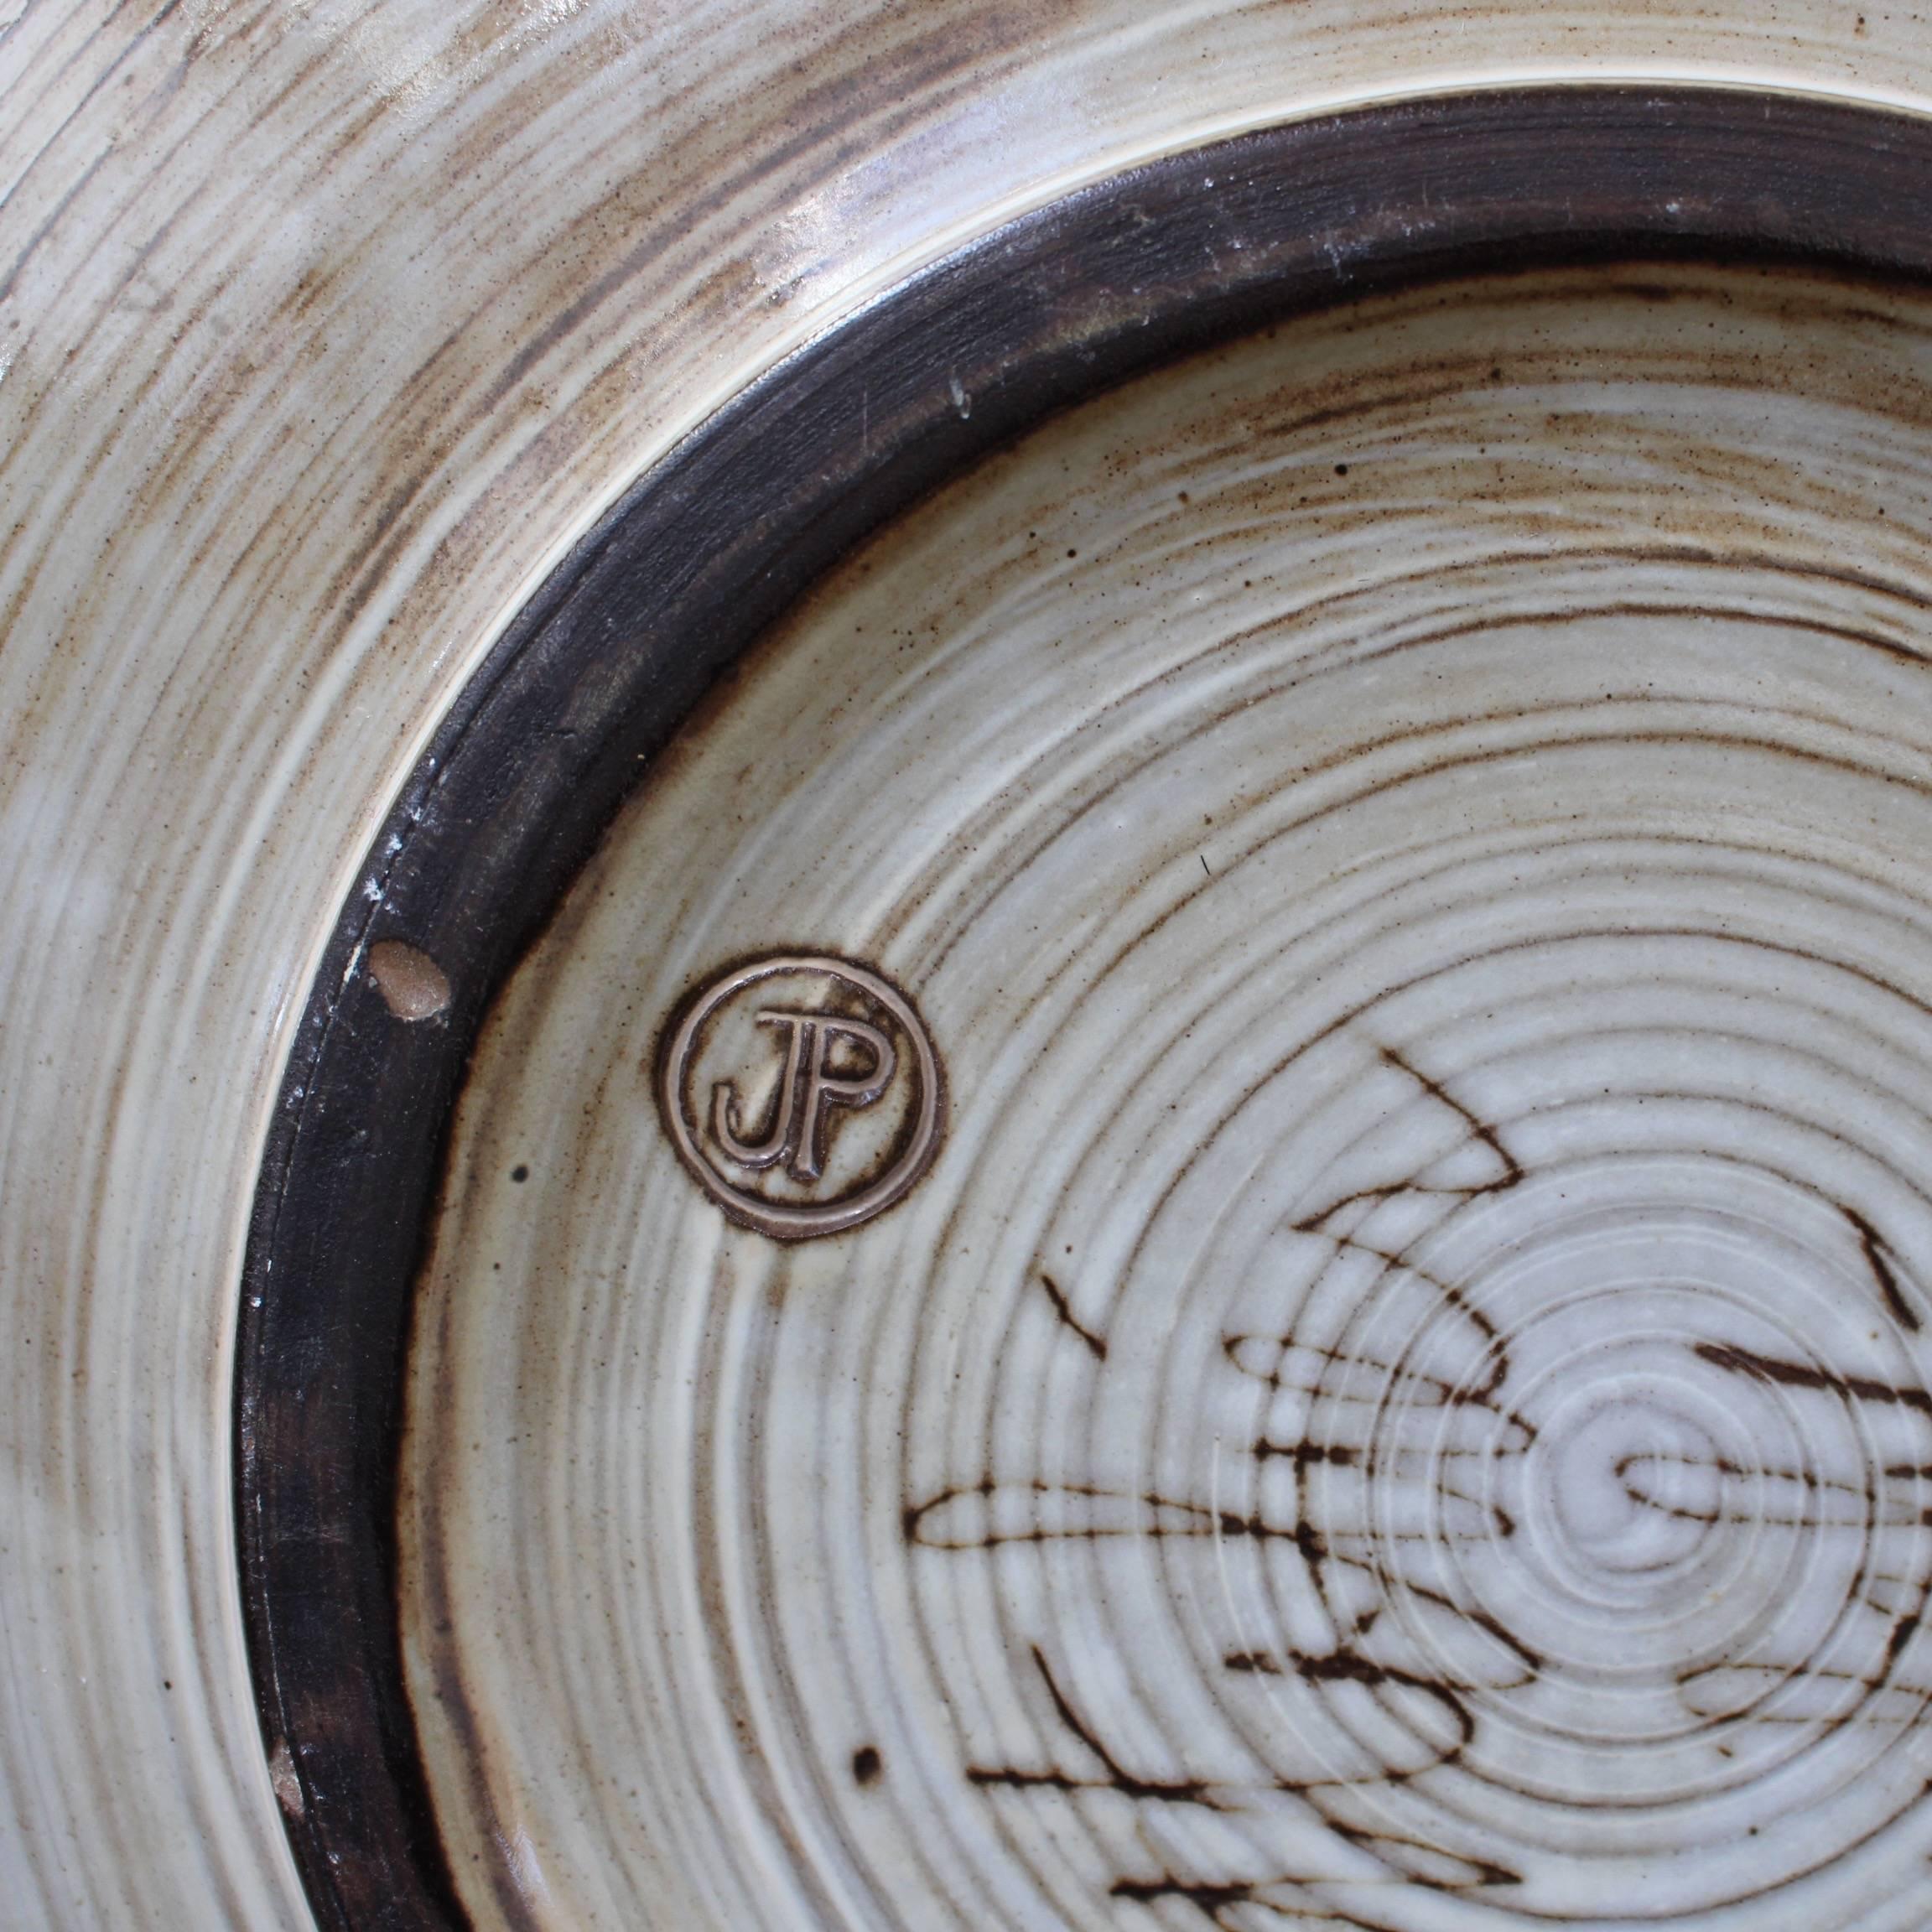 Large Decorative Bowl with Sunburst Motif by Jacques Pouchain-Atelier Dieulefit 1